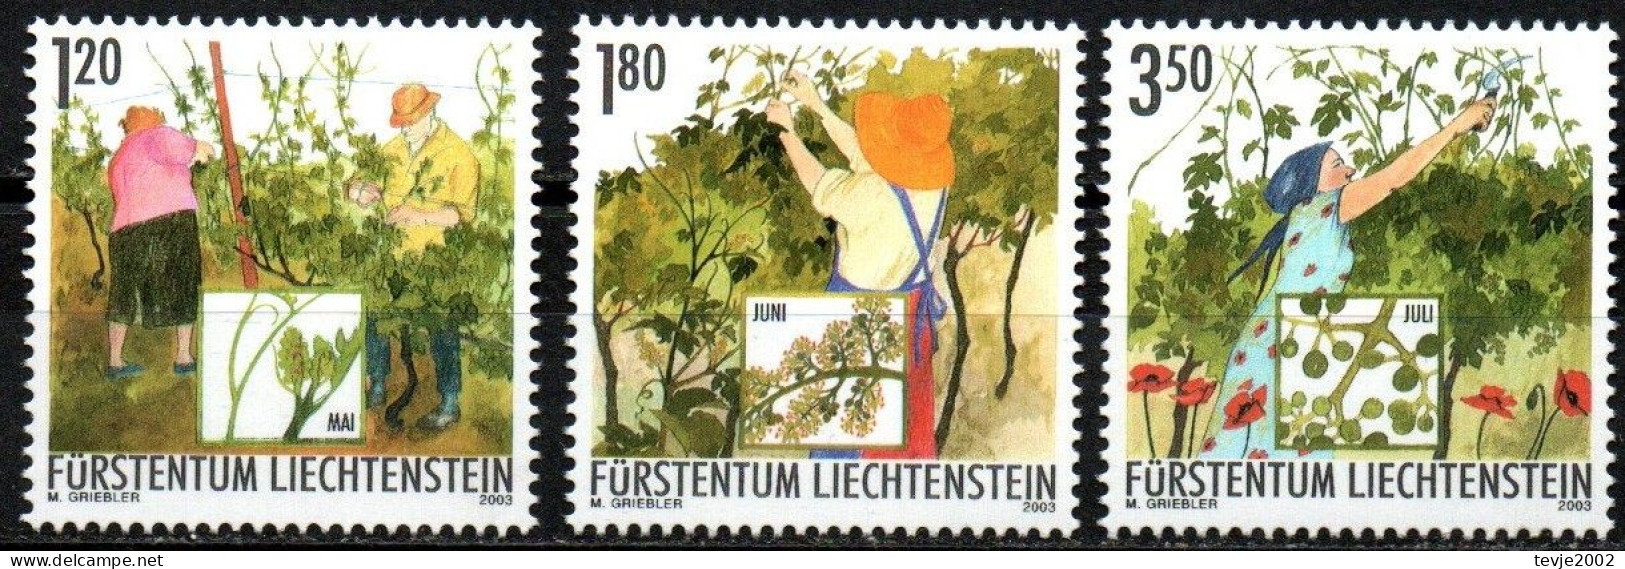 Liechtenstein 2003 - Mi.Nr. 1316 - 1318 - Postfrisch MNH - Weinbau Winzer Wine Growing Winemaker - Landwirtschaft